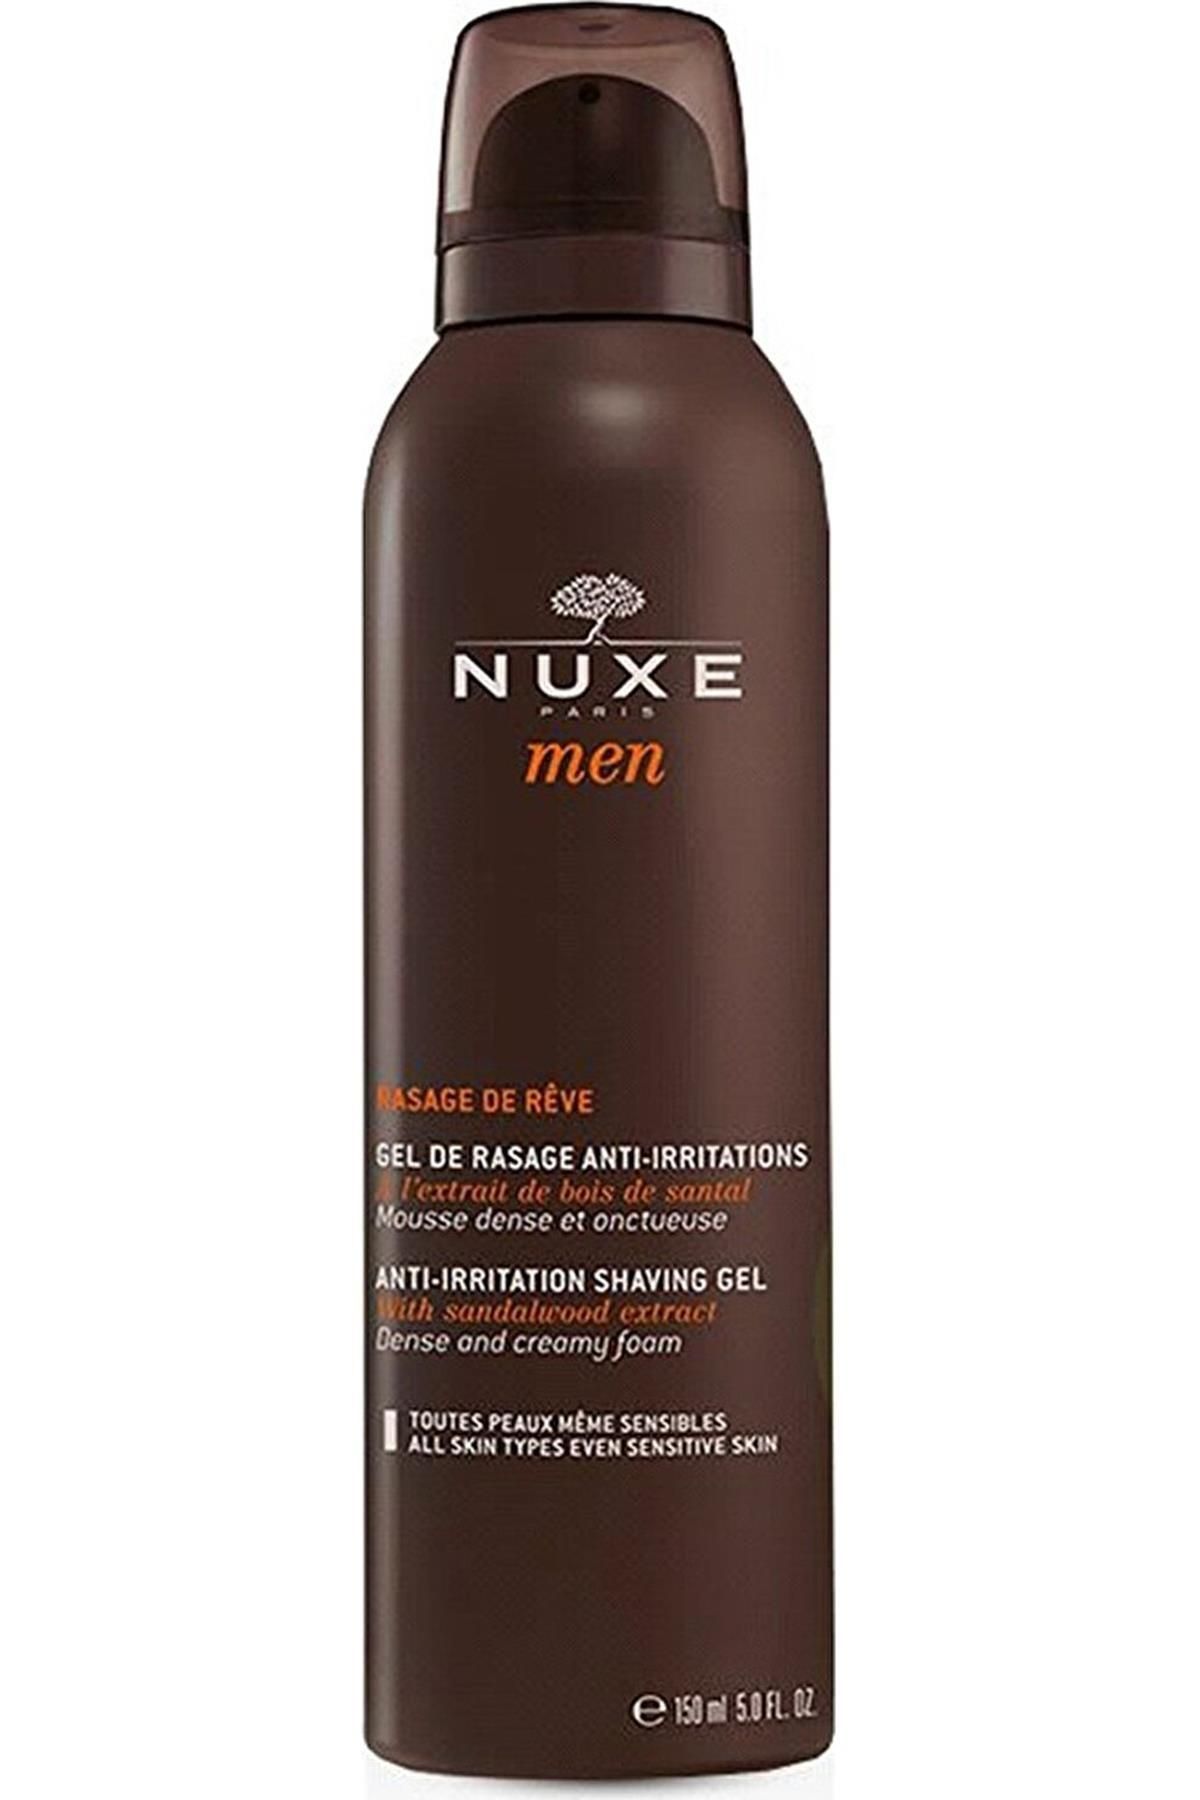 Nuxe ژل اصلاح مردانه با عطر رویایی 150 میلی لیتر